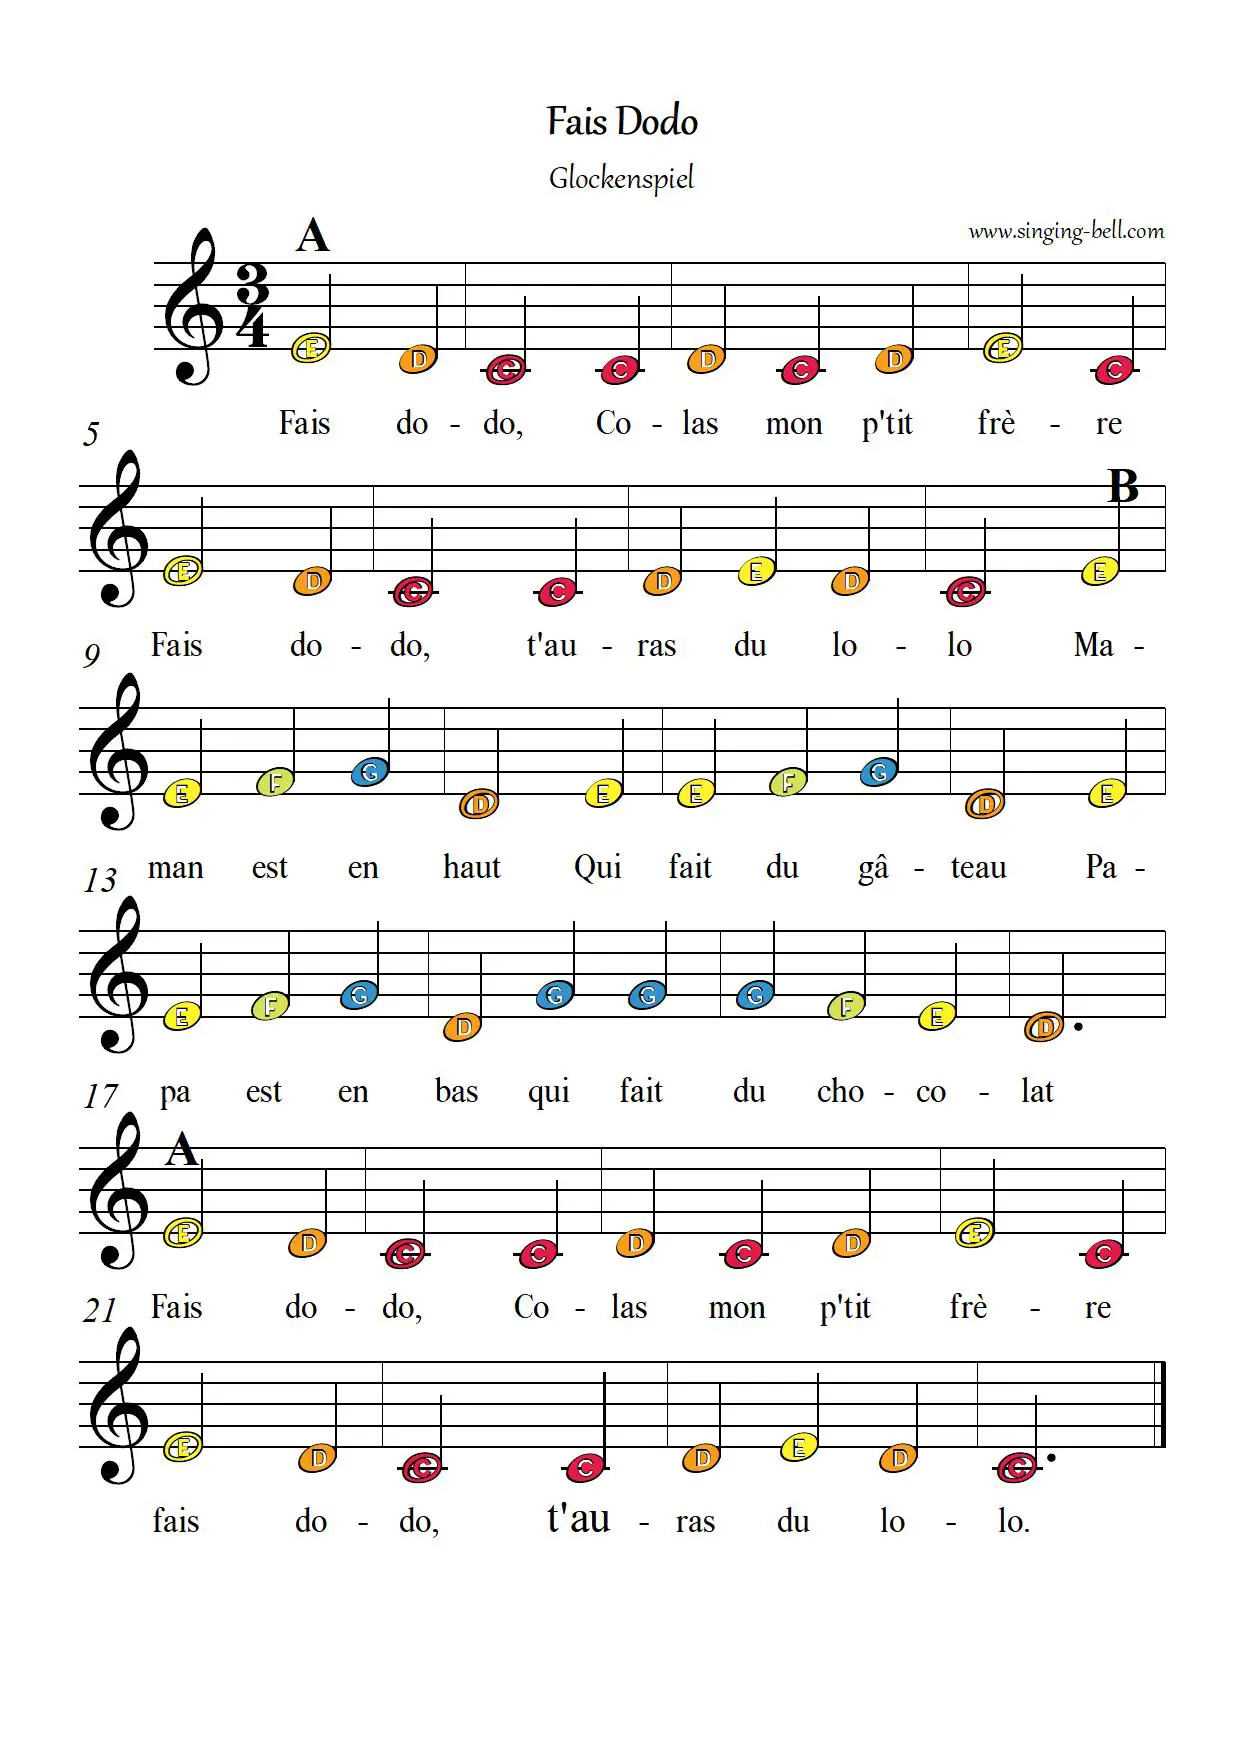 Fais Dodo Colas mon p'tit frere free xylophone glockenspiel sheet music color notes chart pdf p.1